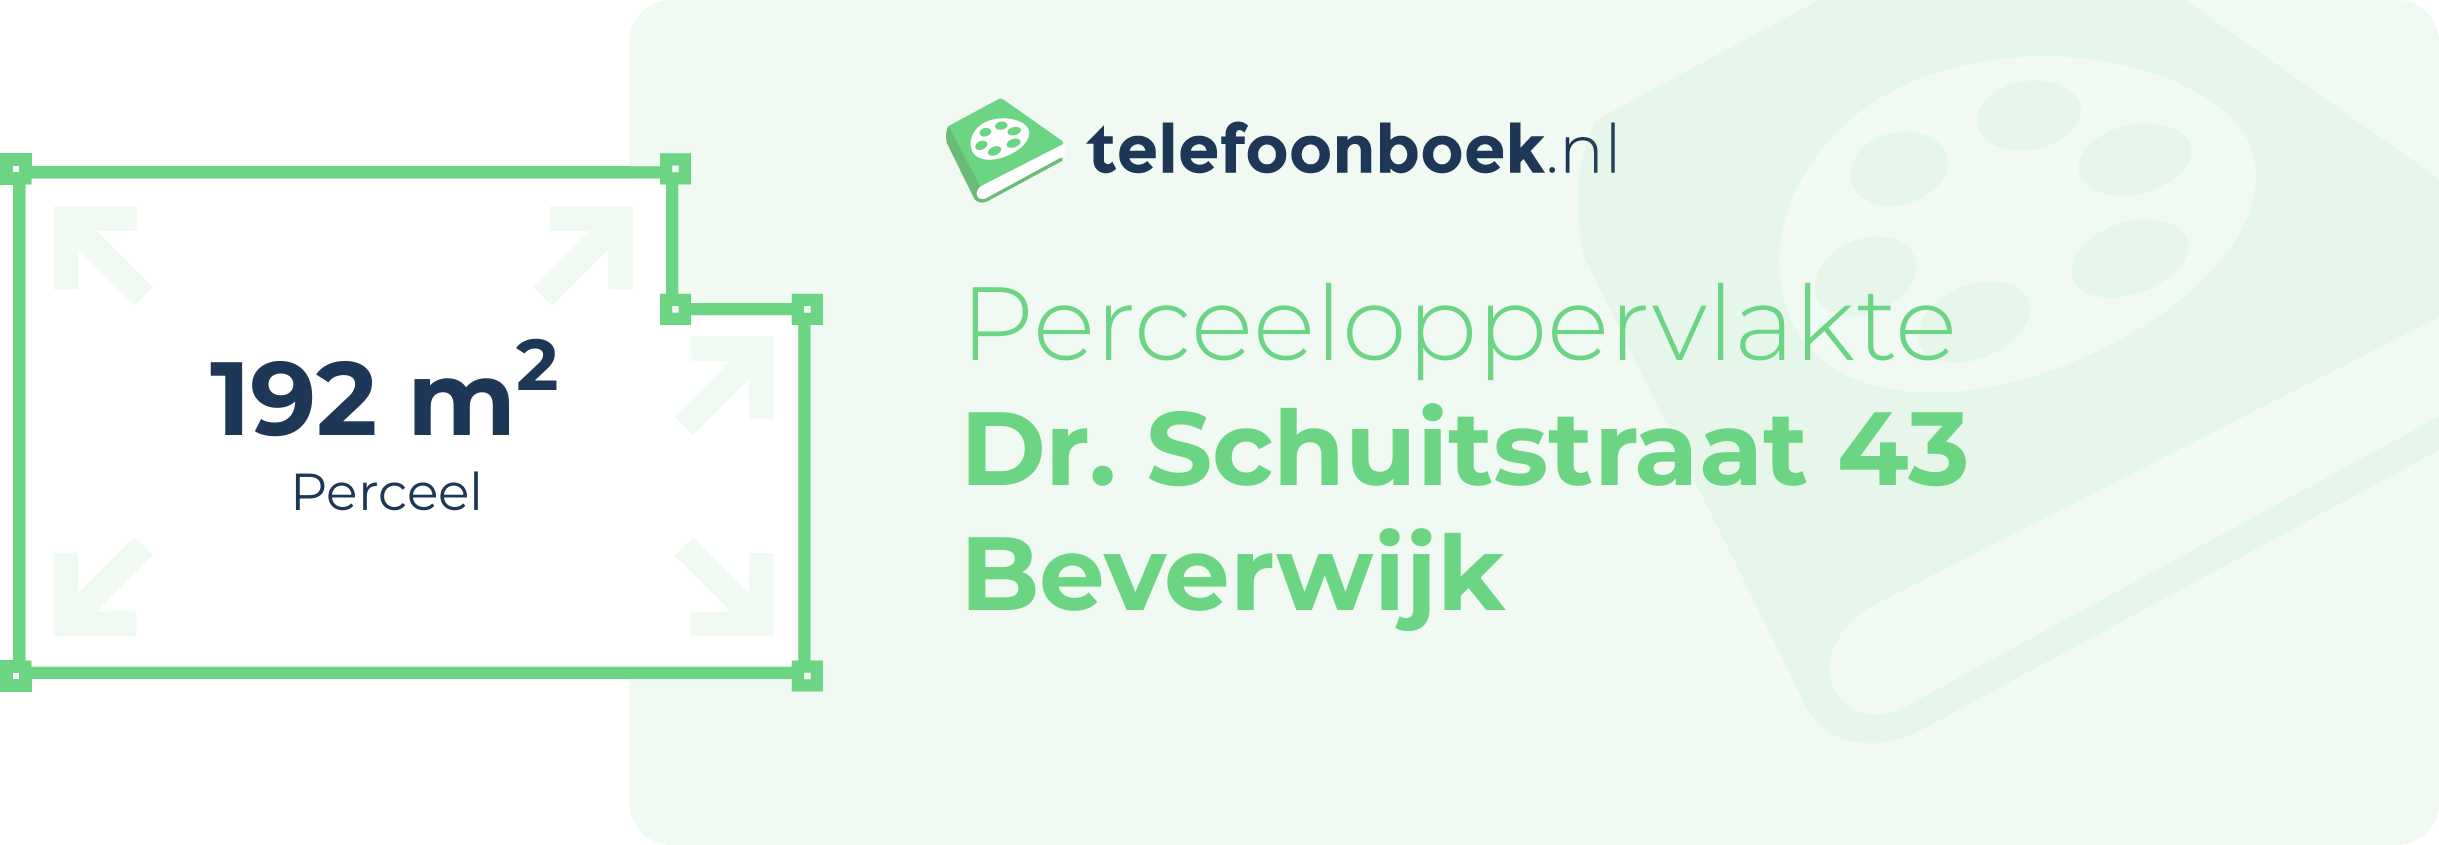 Perceeloppervlakte Dr. Schuitstraat 43 Beverwijk